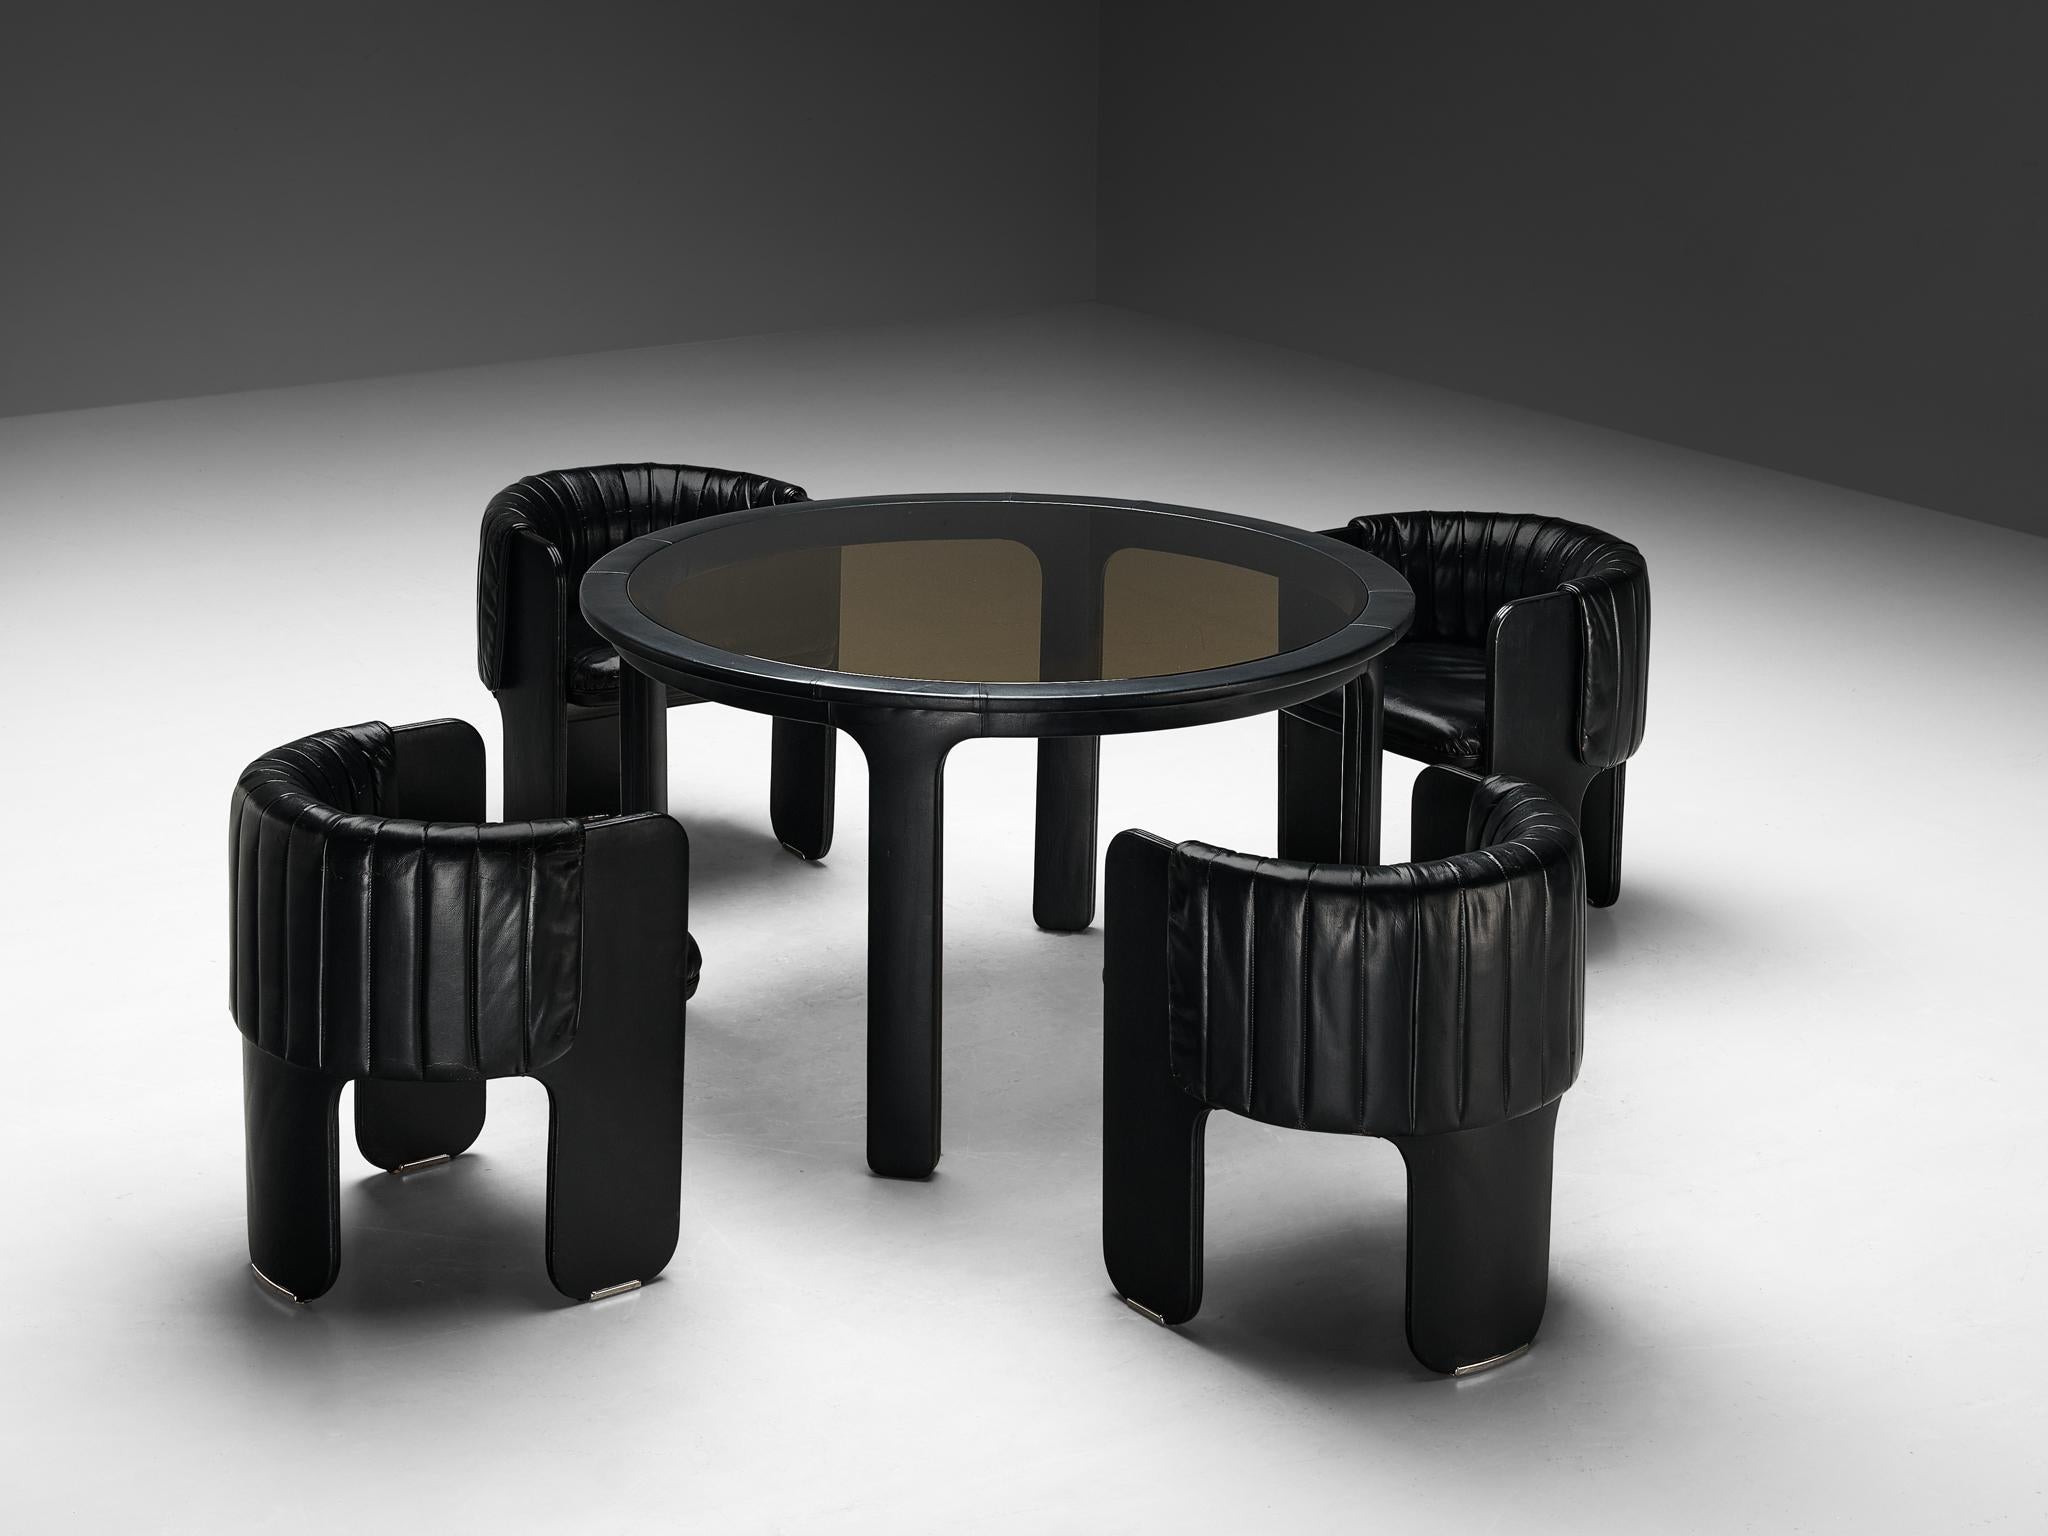 Luigi Massoni pour Poltrona Frau, ensemble de quatre fauteuils avec table à manger, modèle 'Dinette', cuir, chrome, verre, Italie, 1972

Un ensemble remarquable composé de quatre chaises Din/One et d'une table de salle à manger, conçu par Luigi